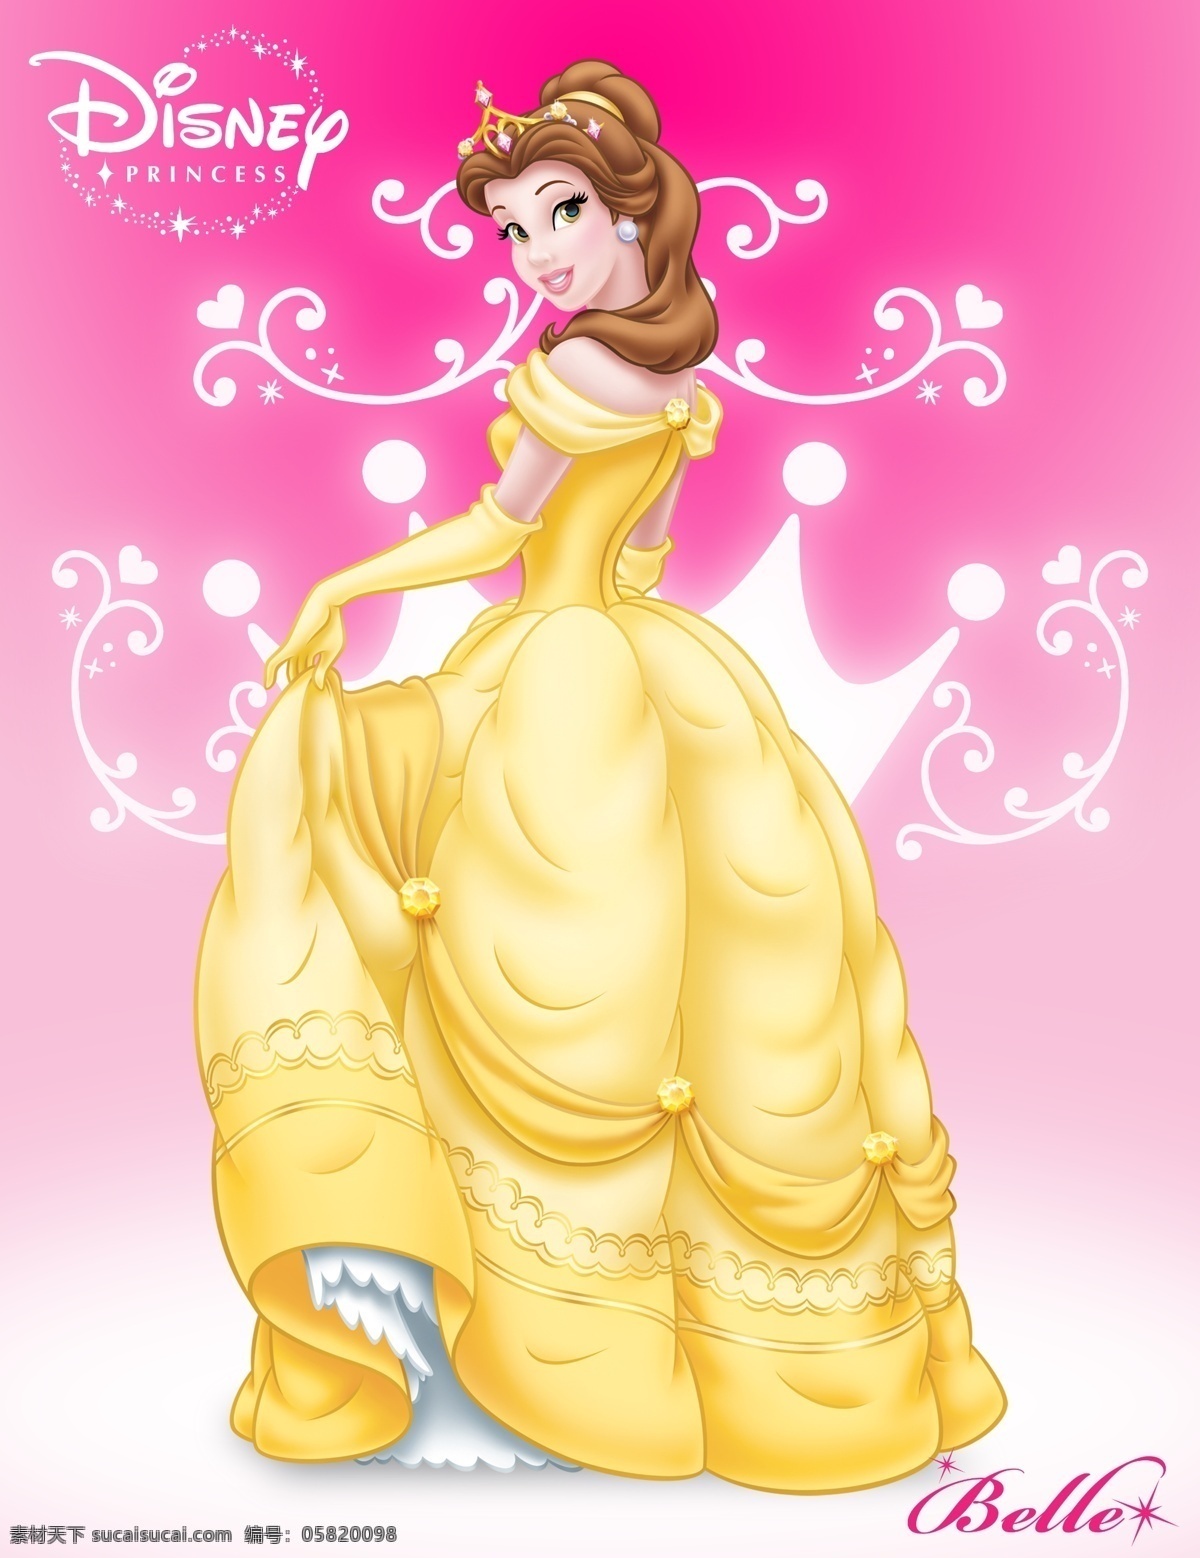 迪士尼 野兽公主 贝儿 belle 2010年 b版 城堡 奇迹发生 美女与野兽 英俊王子 迪士尼小公主 人物 分层 源文件